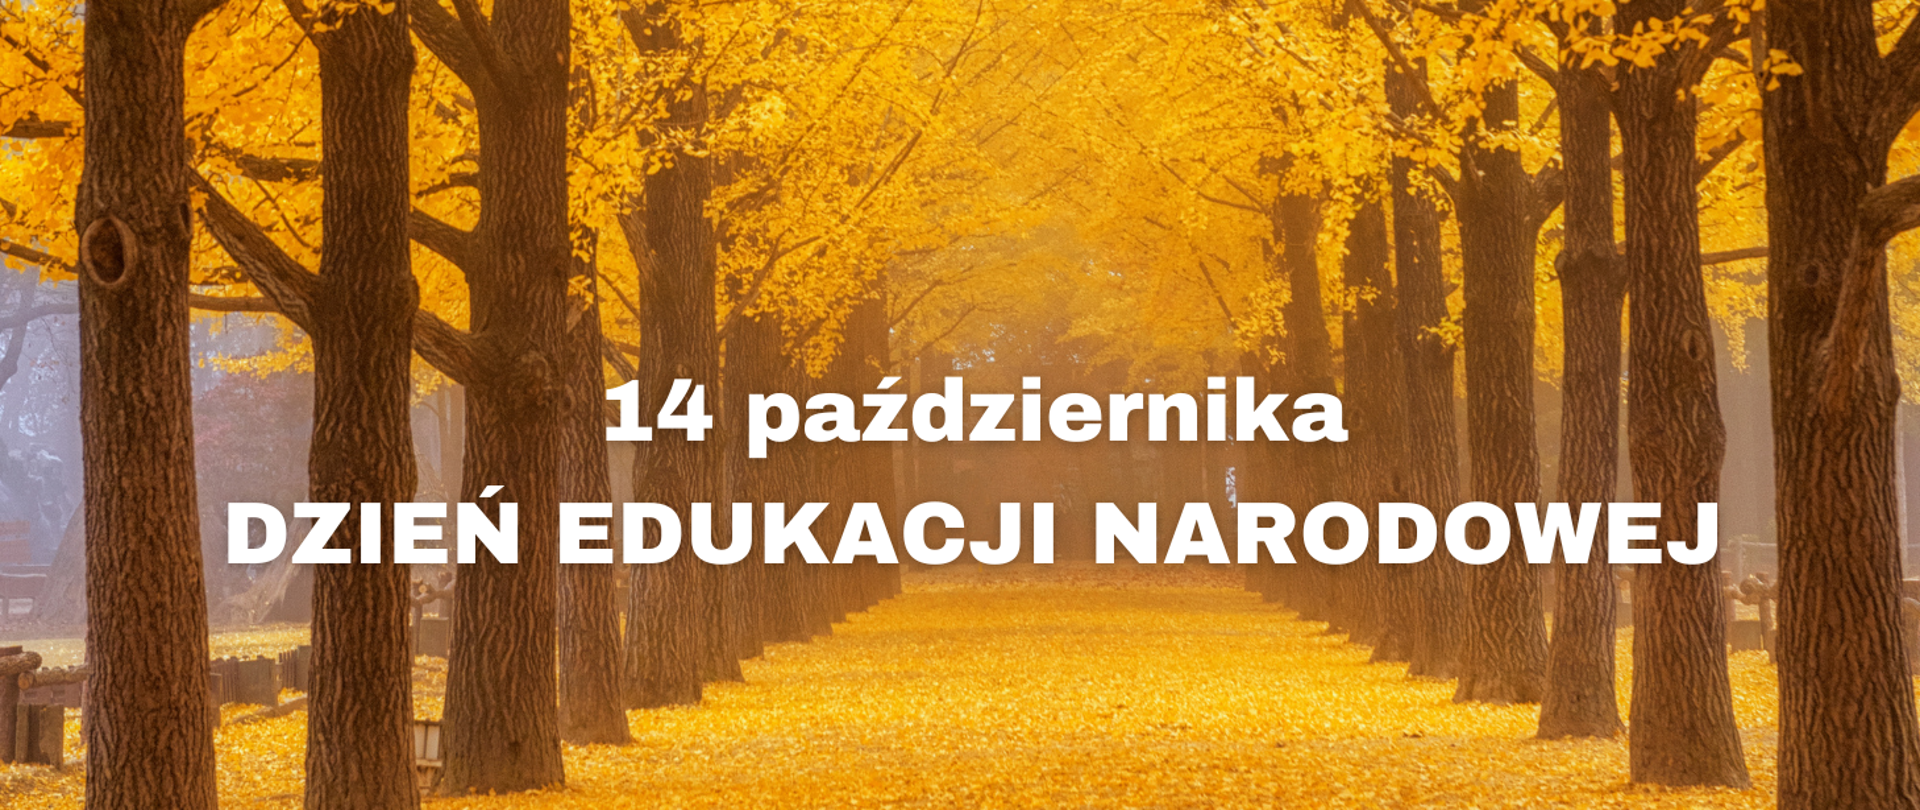 Na obrazku alejka wysypana żółtymi liśćmi. Po prawej i lewej stronie alejki rząd drzew z koroną żółtych liści. W centralnej części obrazka biały napis: "14 października Dzień Edukacji Narodowej".